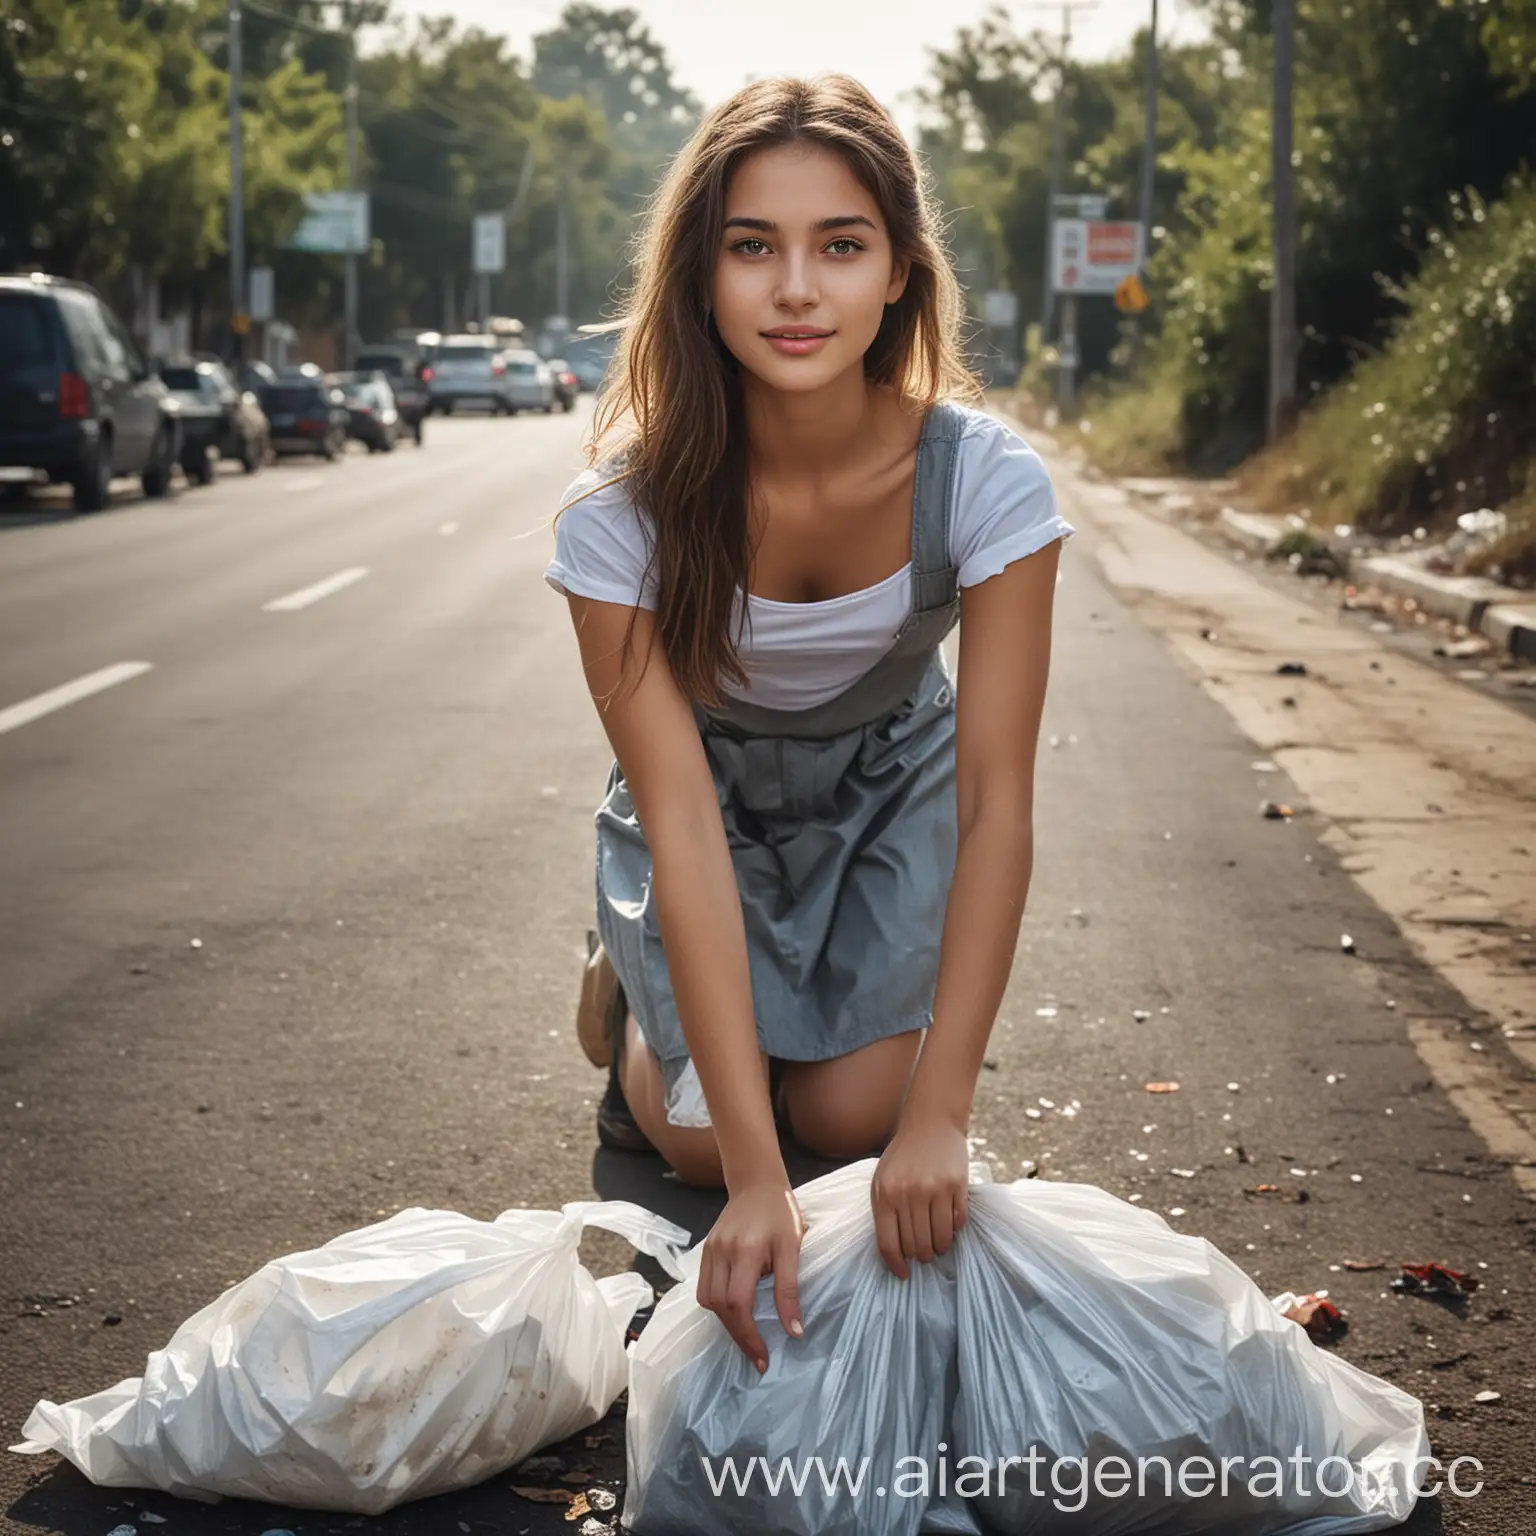 придумай рекламный постер на котором изображена красивая девушка которая уже убрала мусор в пакеты на обочинах дорог и стало чисто 